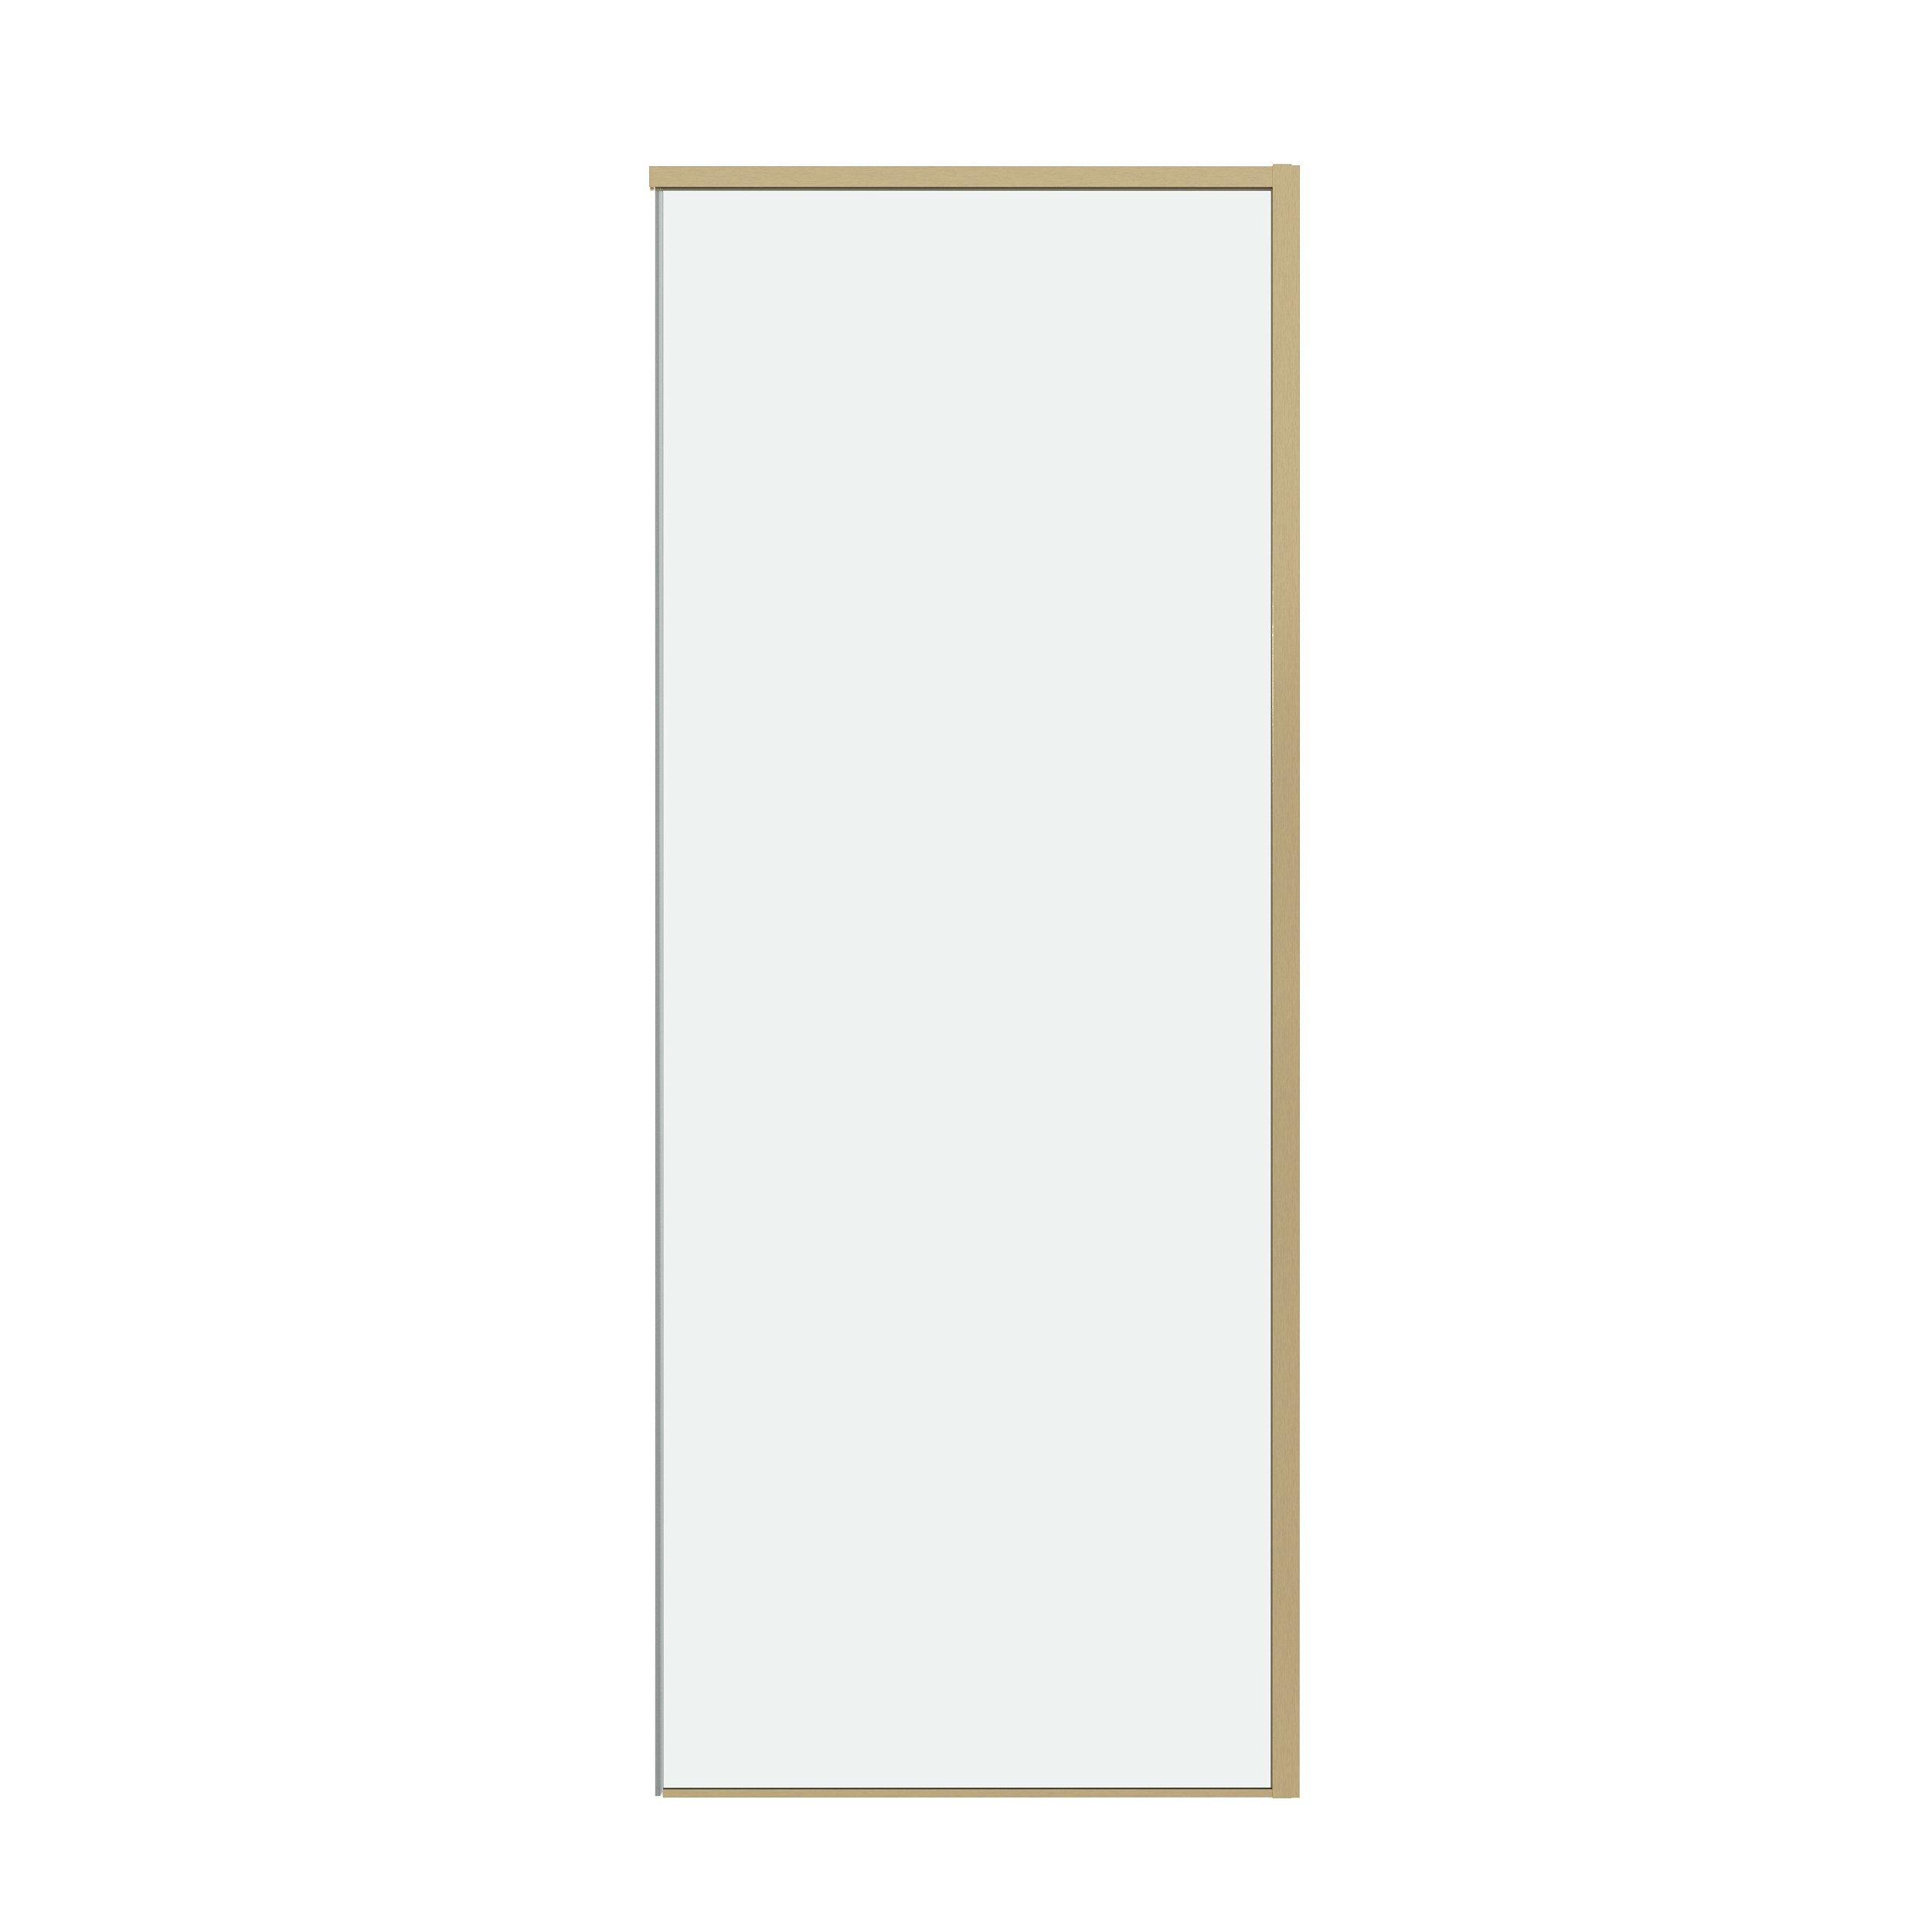 Боковая стенка Grossman Galaxy 70x195 200.K33.01.70.32.00 стекло прозрачное, профиль золото